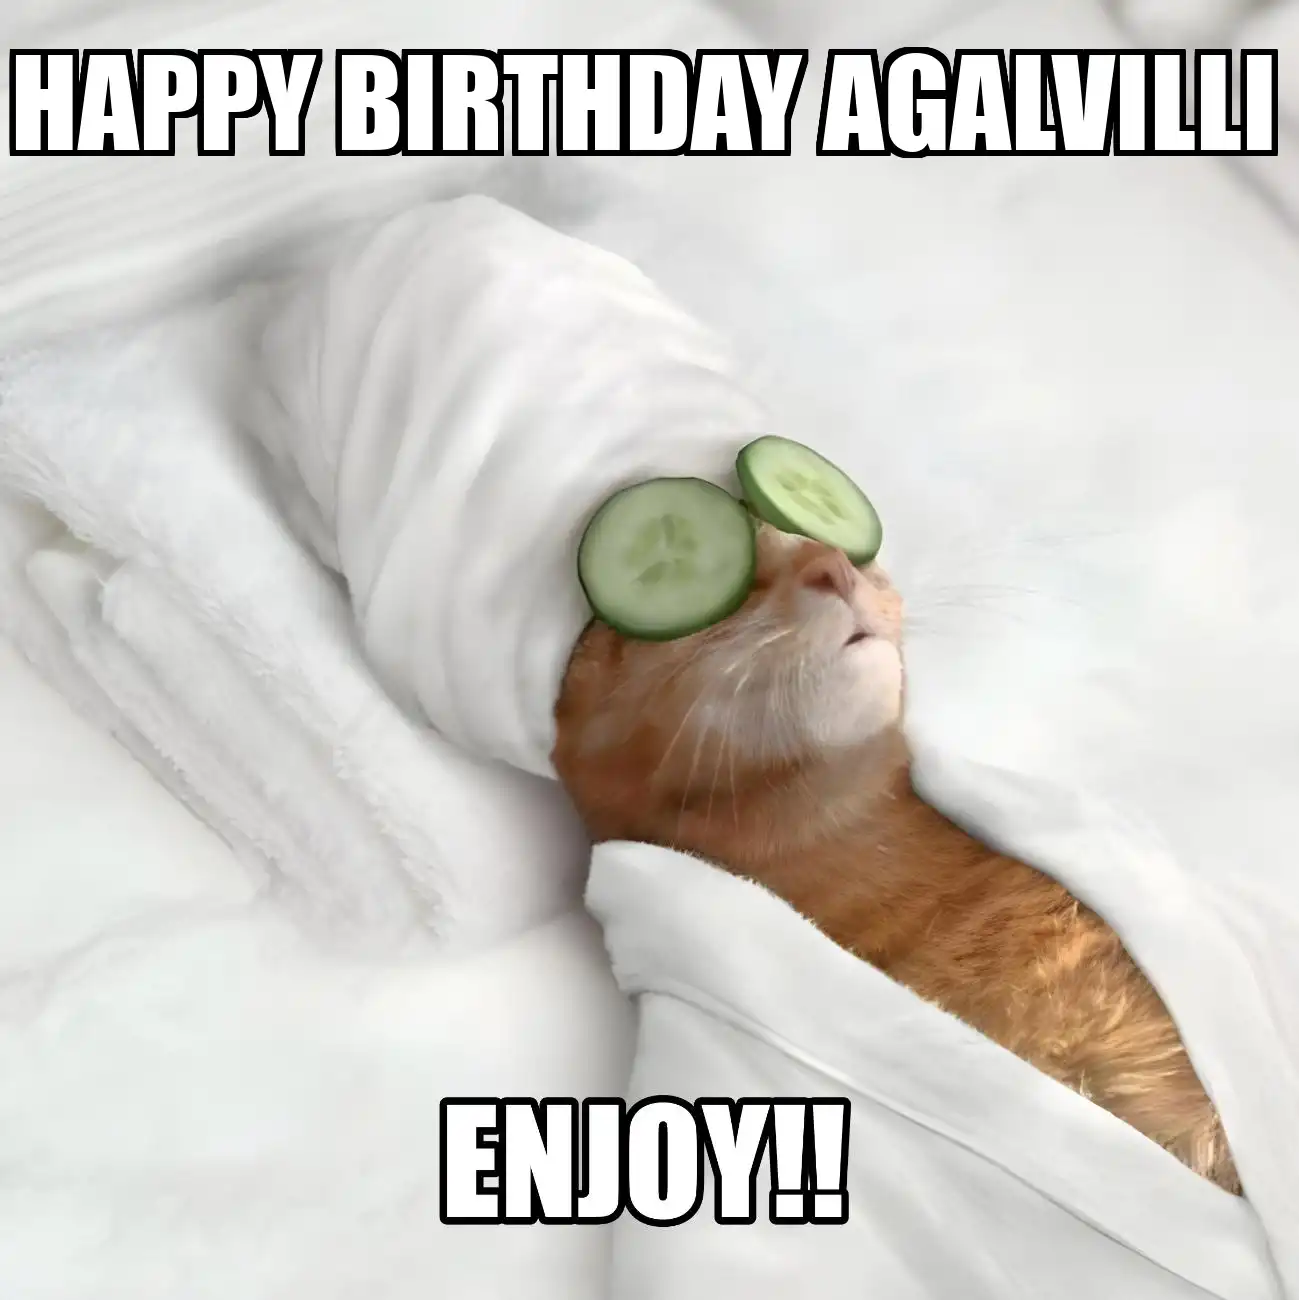 Happy Birthday Agalvilli Enjoy Cat Meme